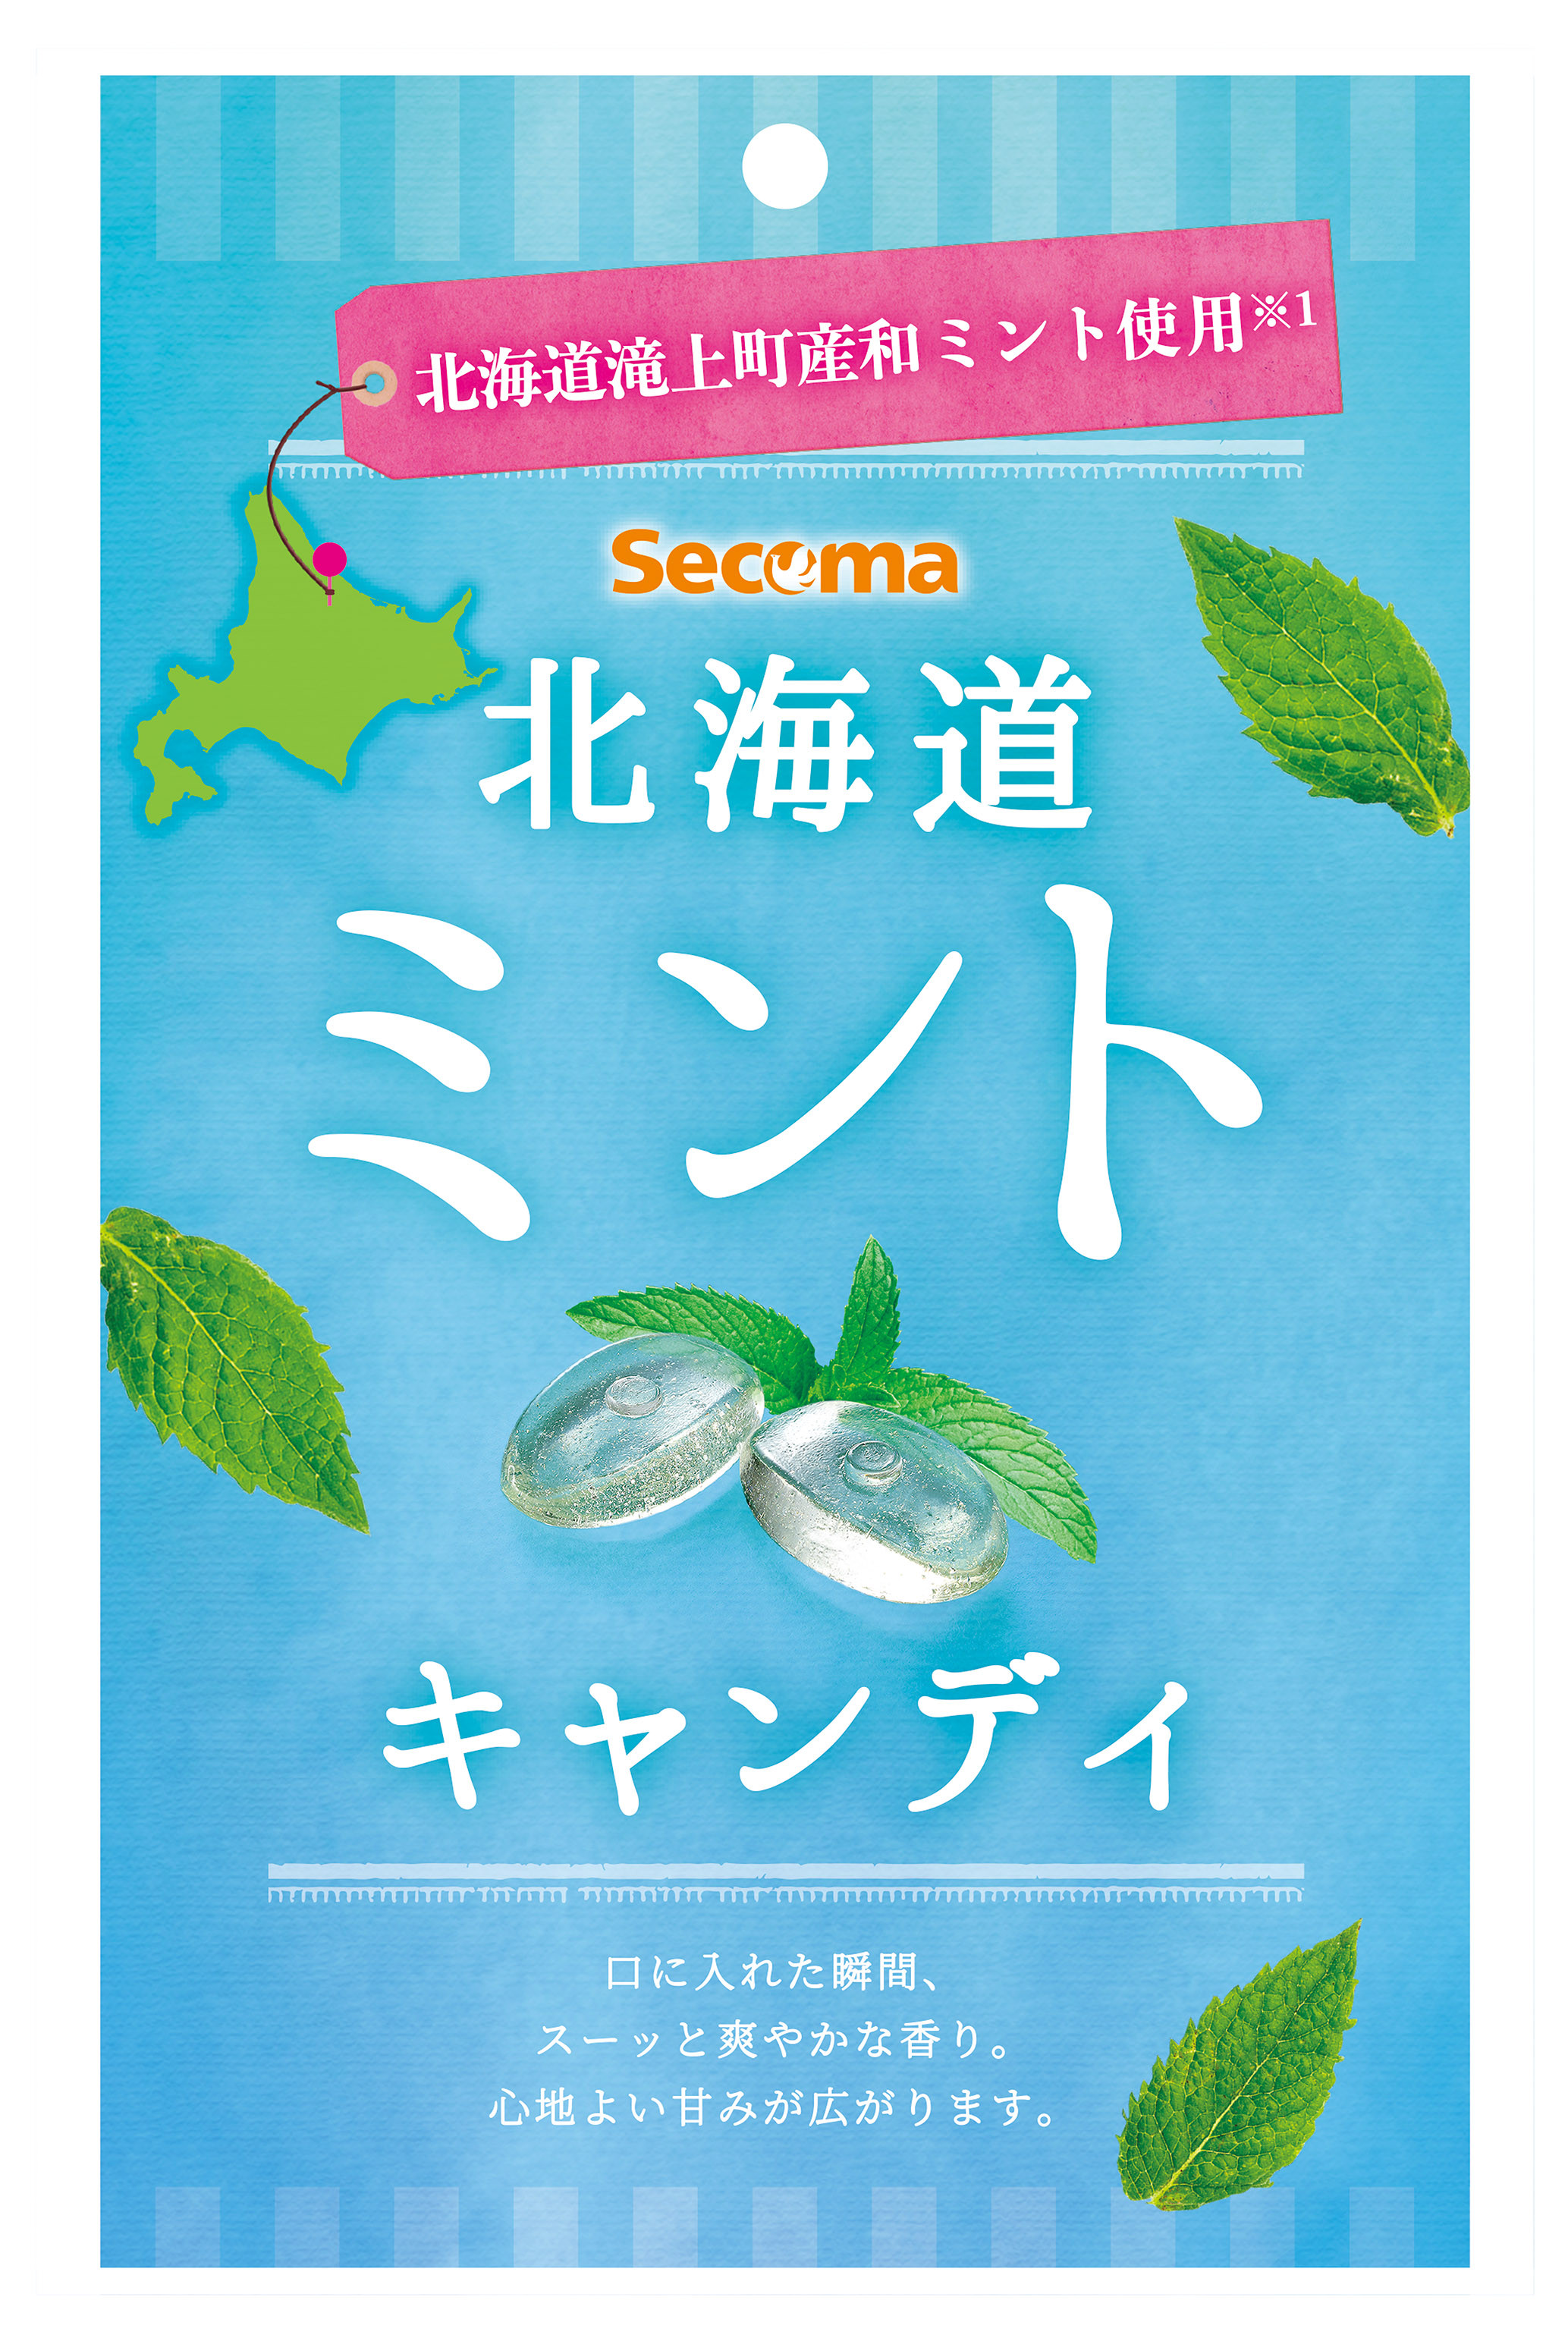 
Secoma北海道滝上町産ミントキャンディ12袋（1袋あたり内容量46g）
